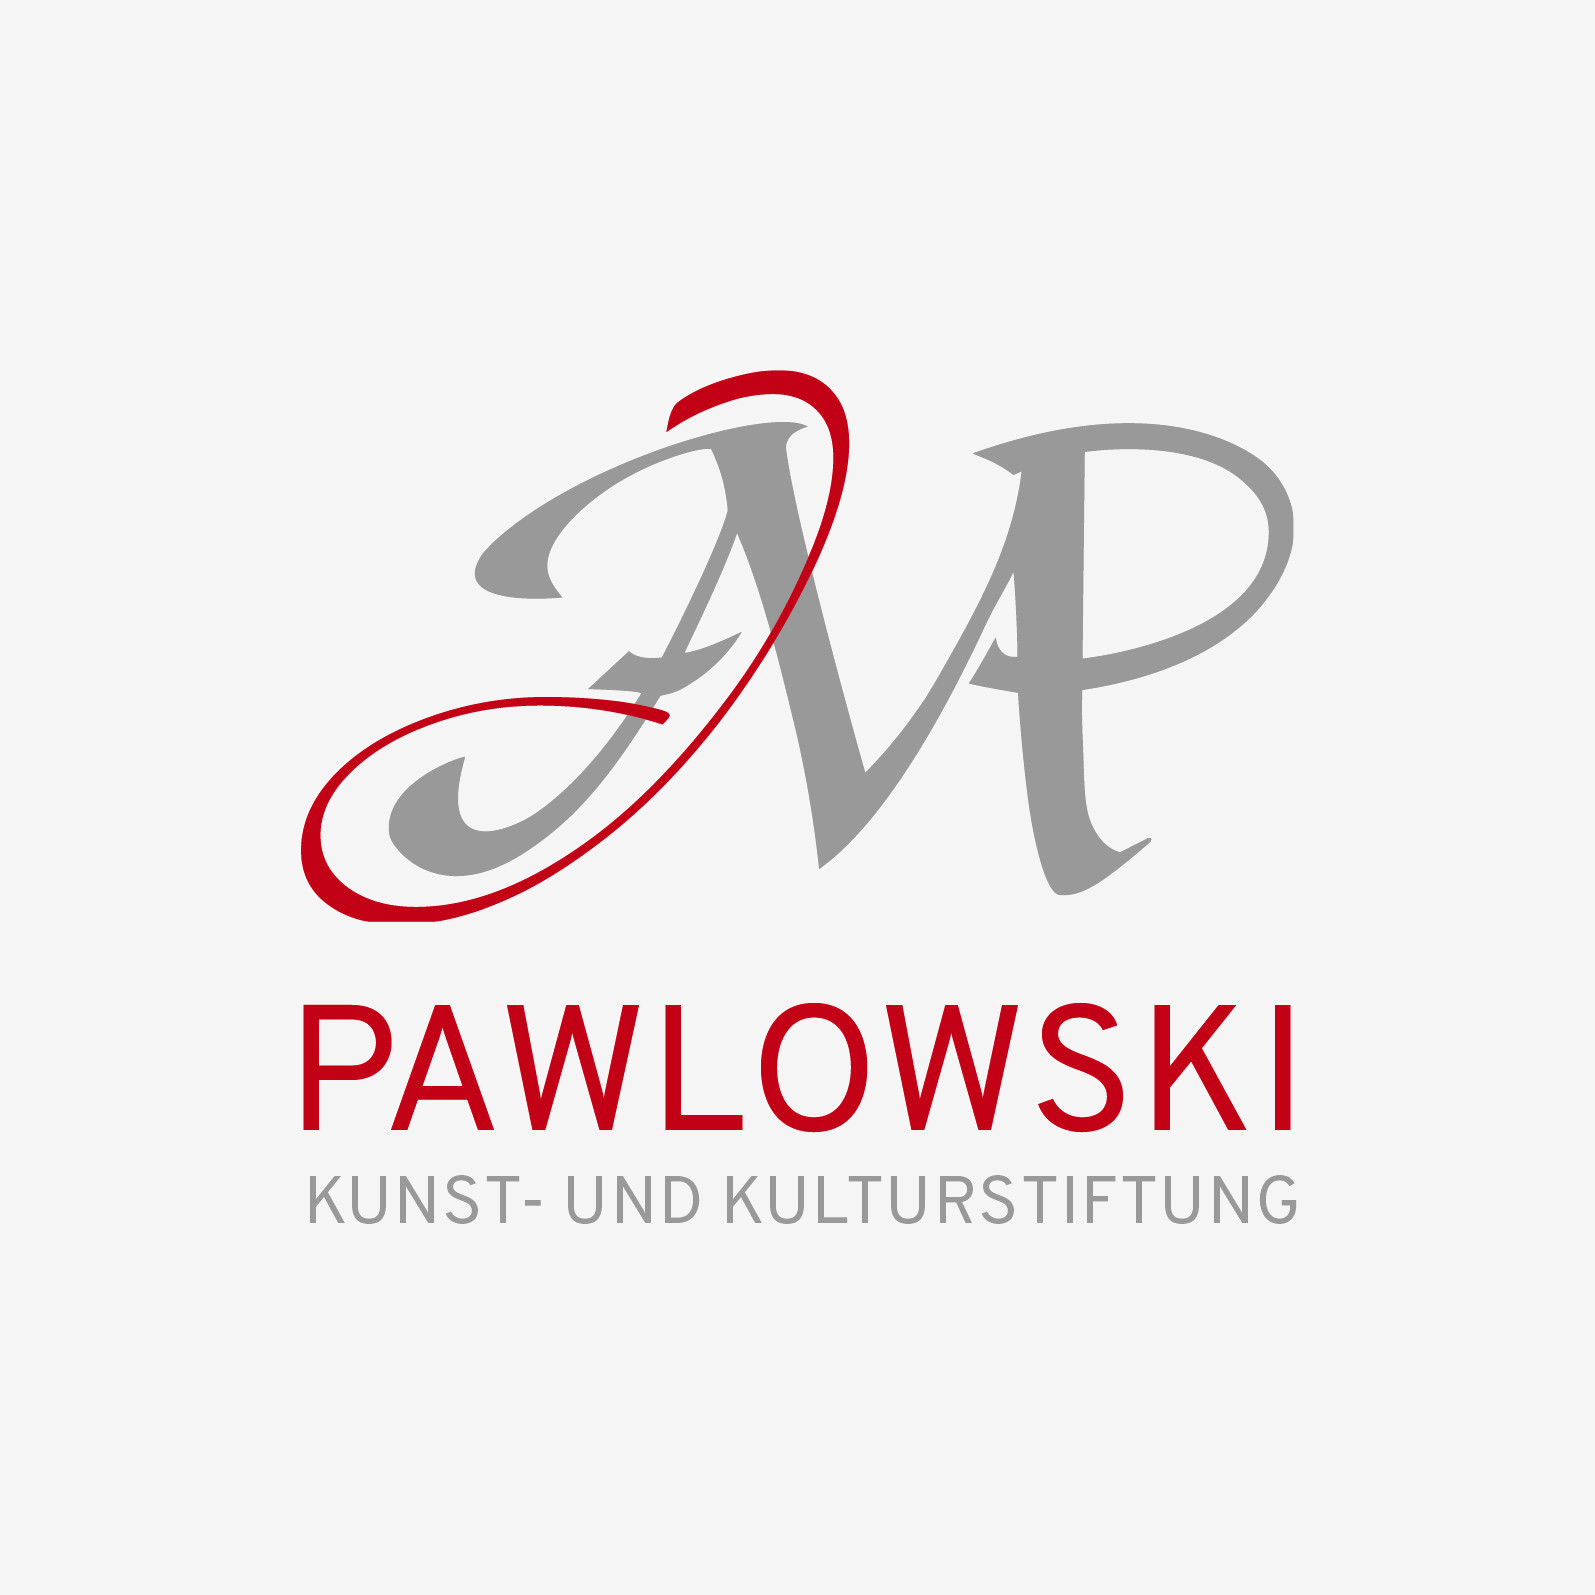 Pawlowski Kunst- und Kulturstiftung